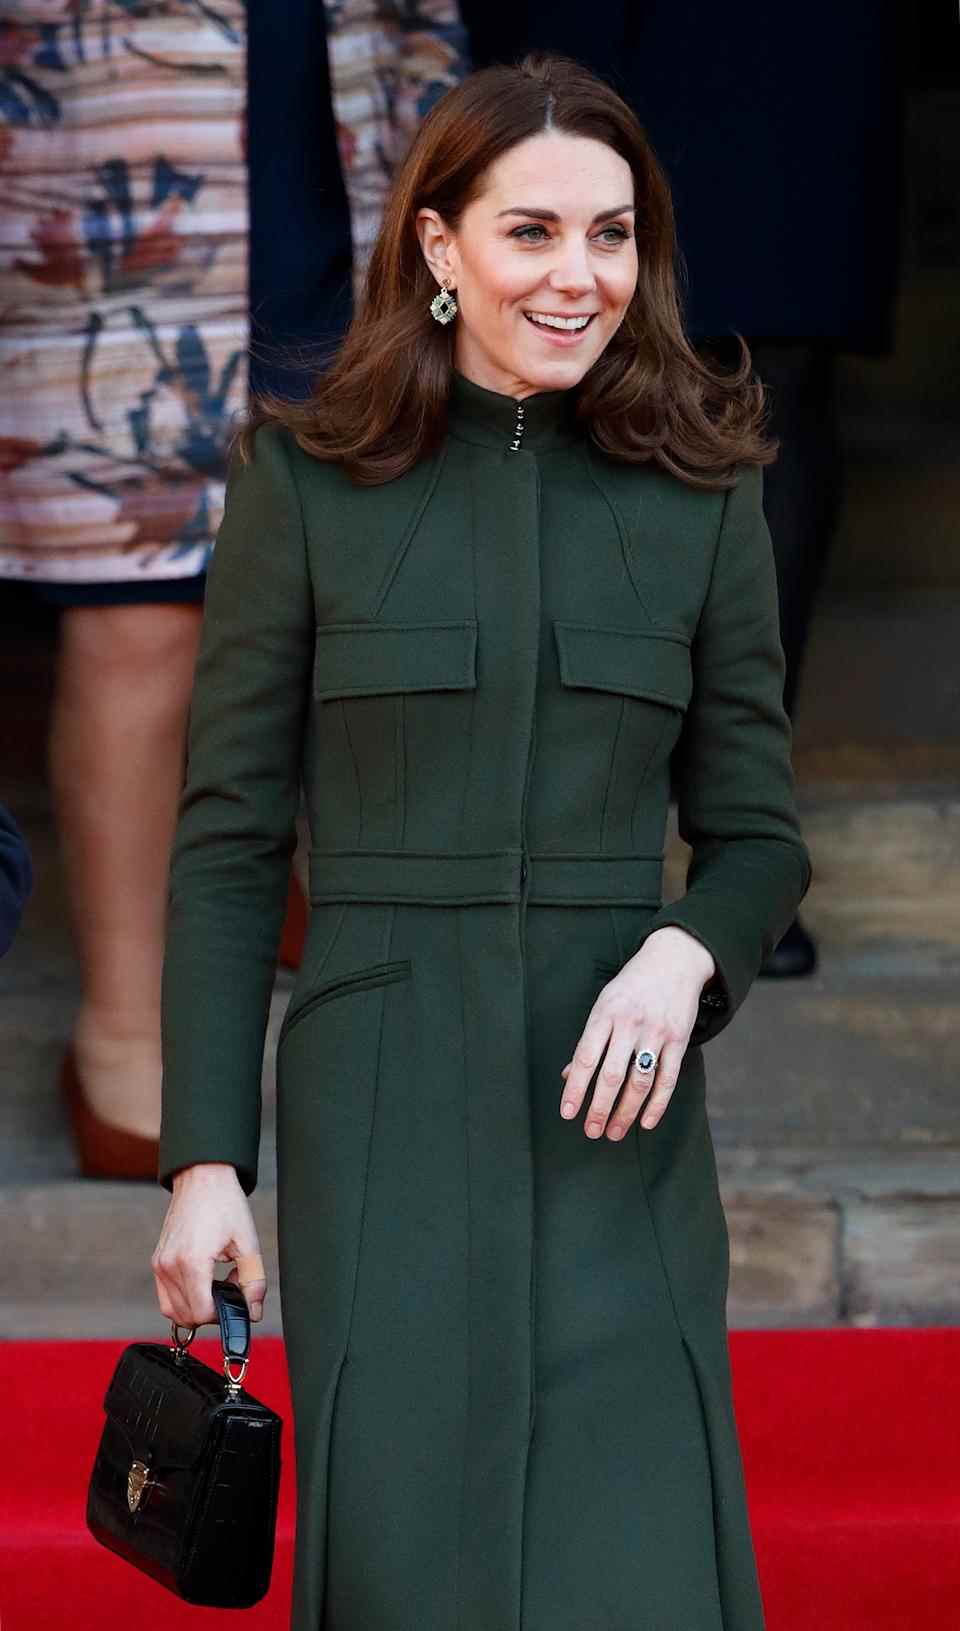 Le premier engagement royal de Kate Middleton en 2020, qui l'a vue visiter Bradford, l'a vue accessoiriser avec la version noire du sac Midi Mayfair.  (Getty Images)